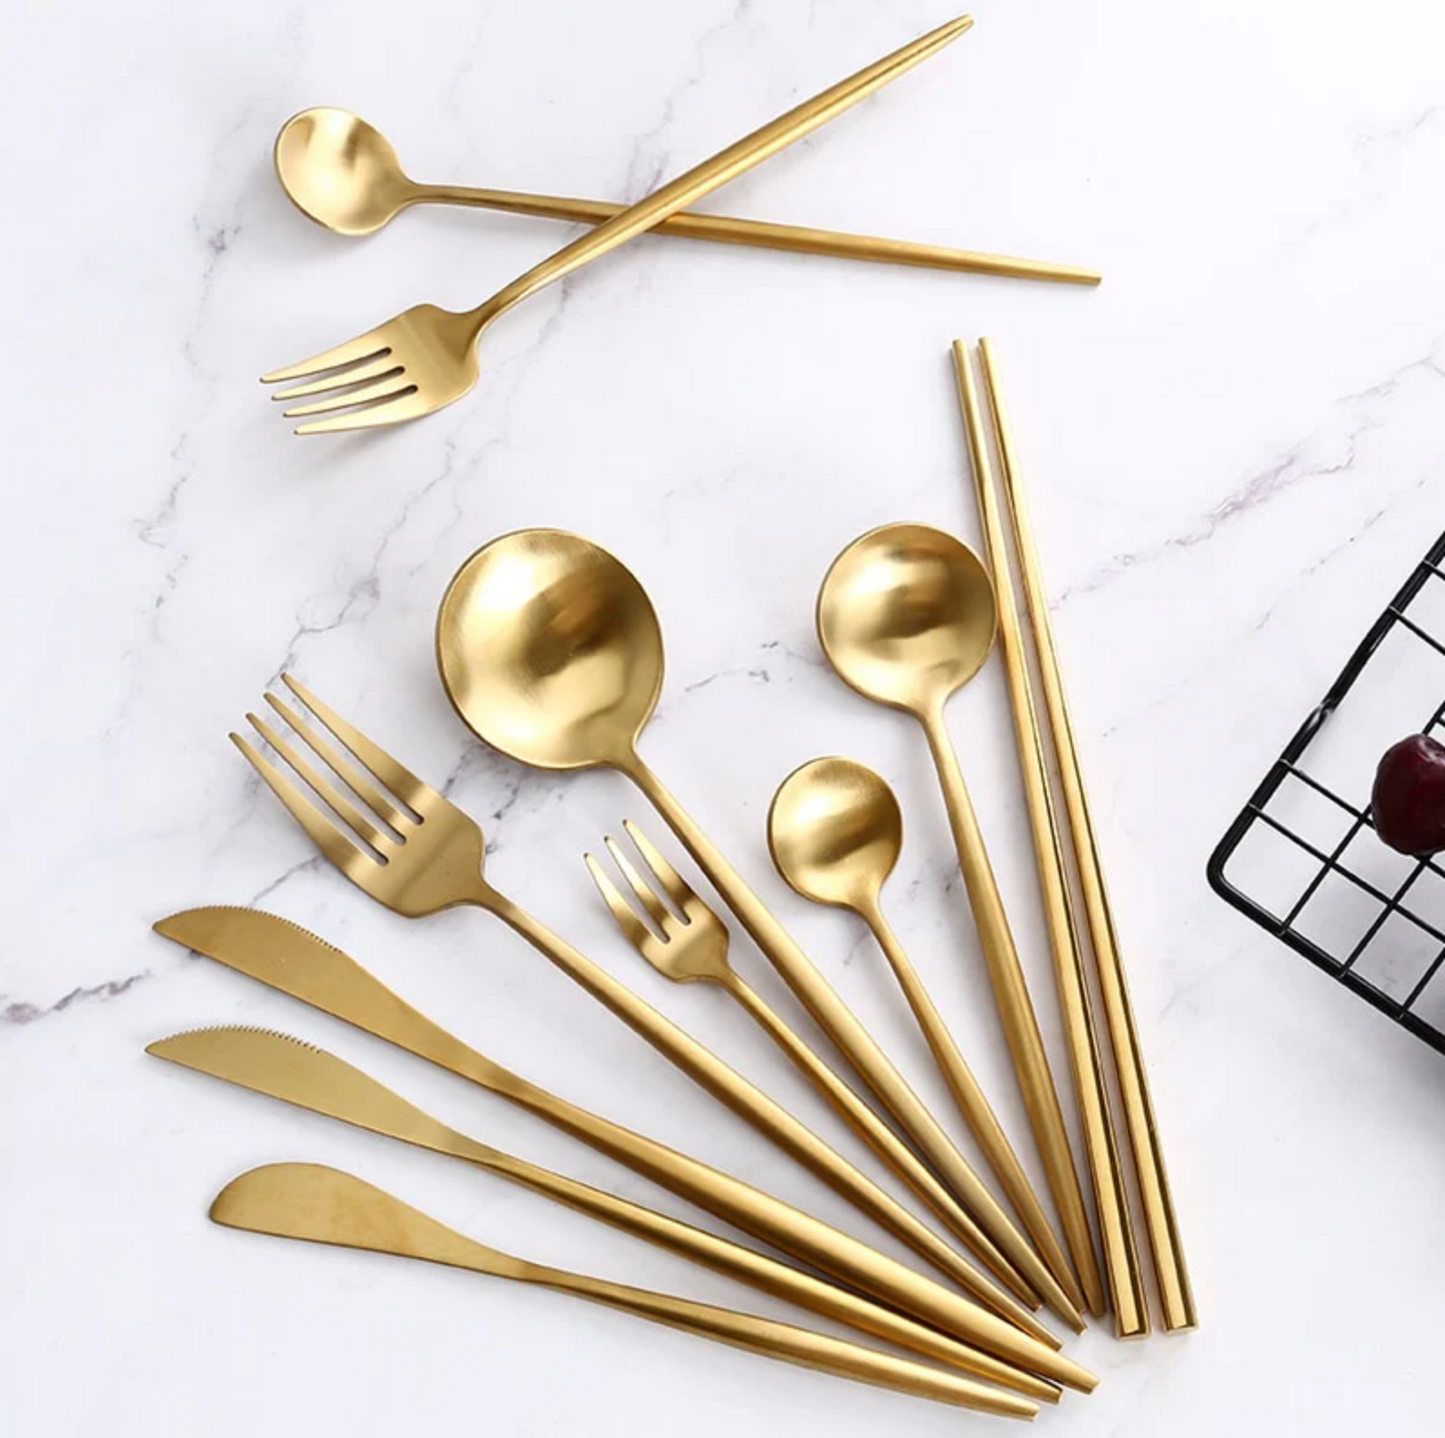 Luxus-Geschirr-Set mit goldenem Spiegel - 24-teilig